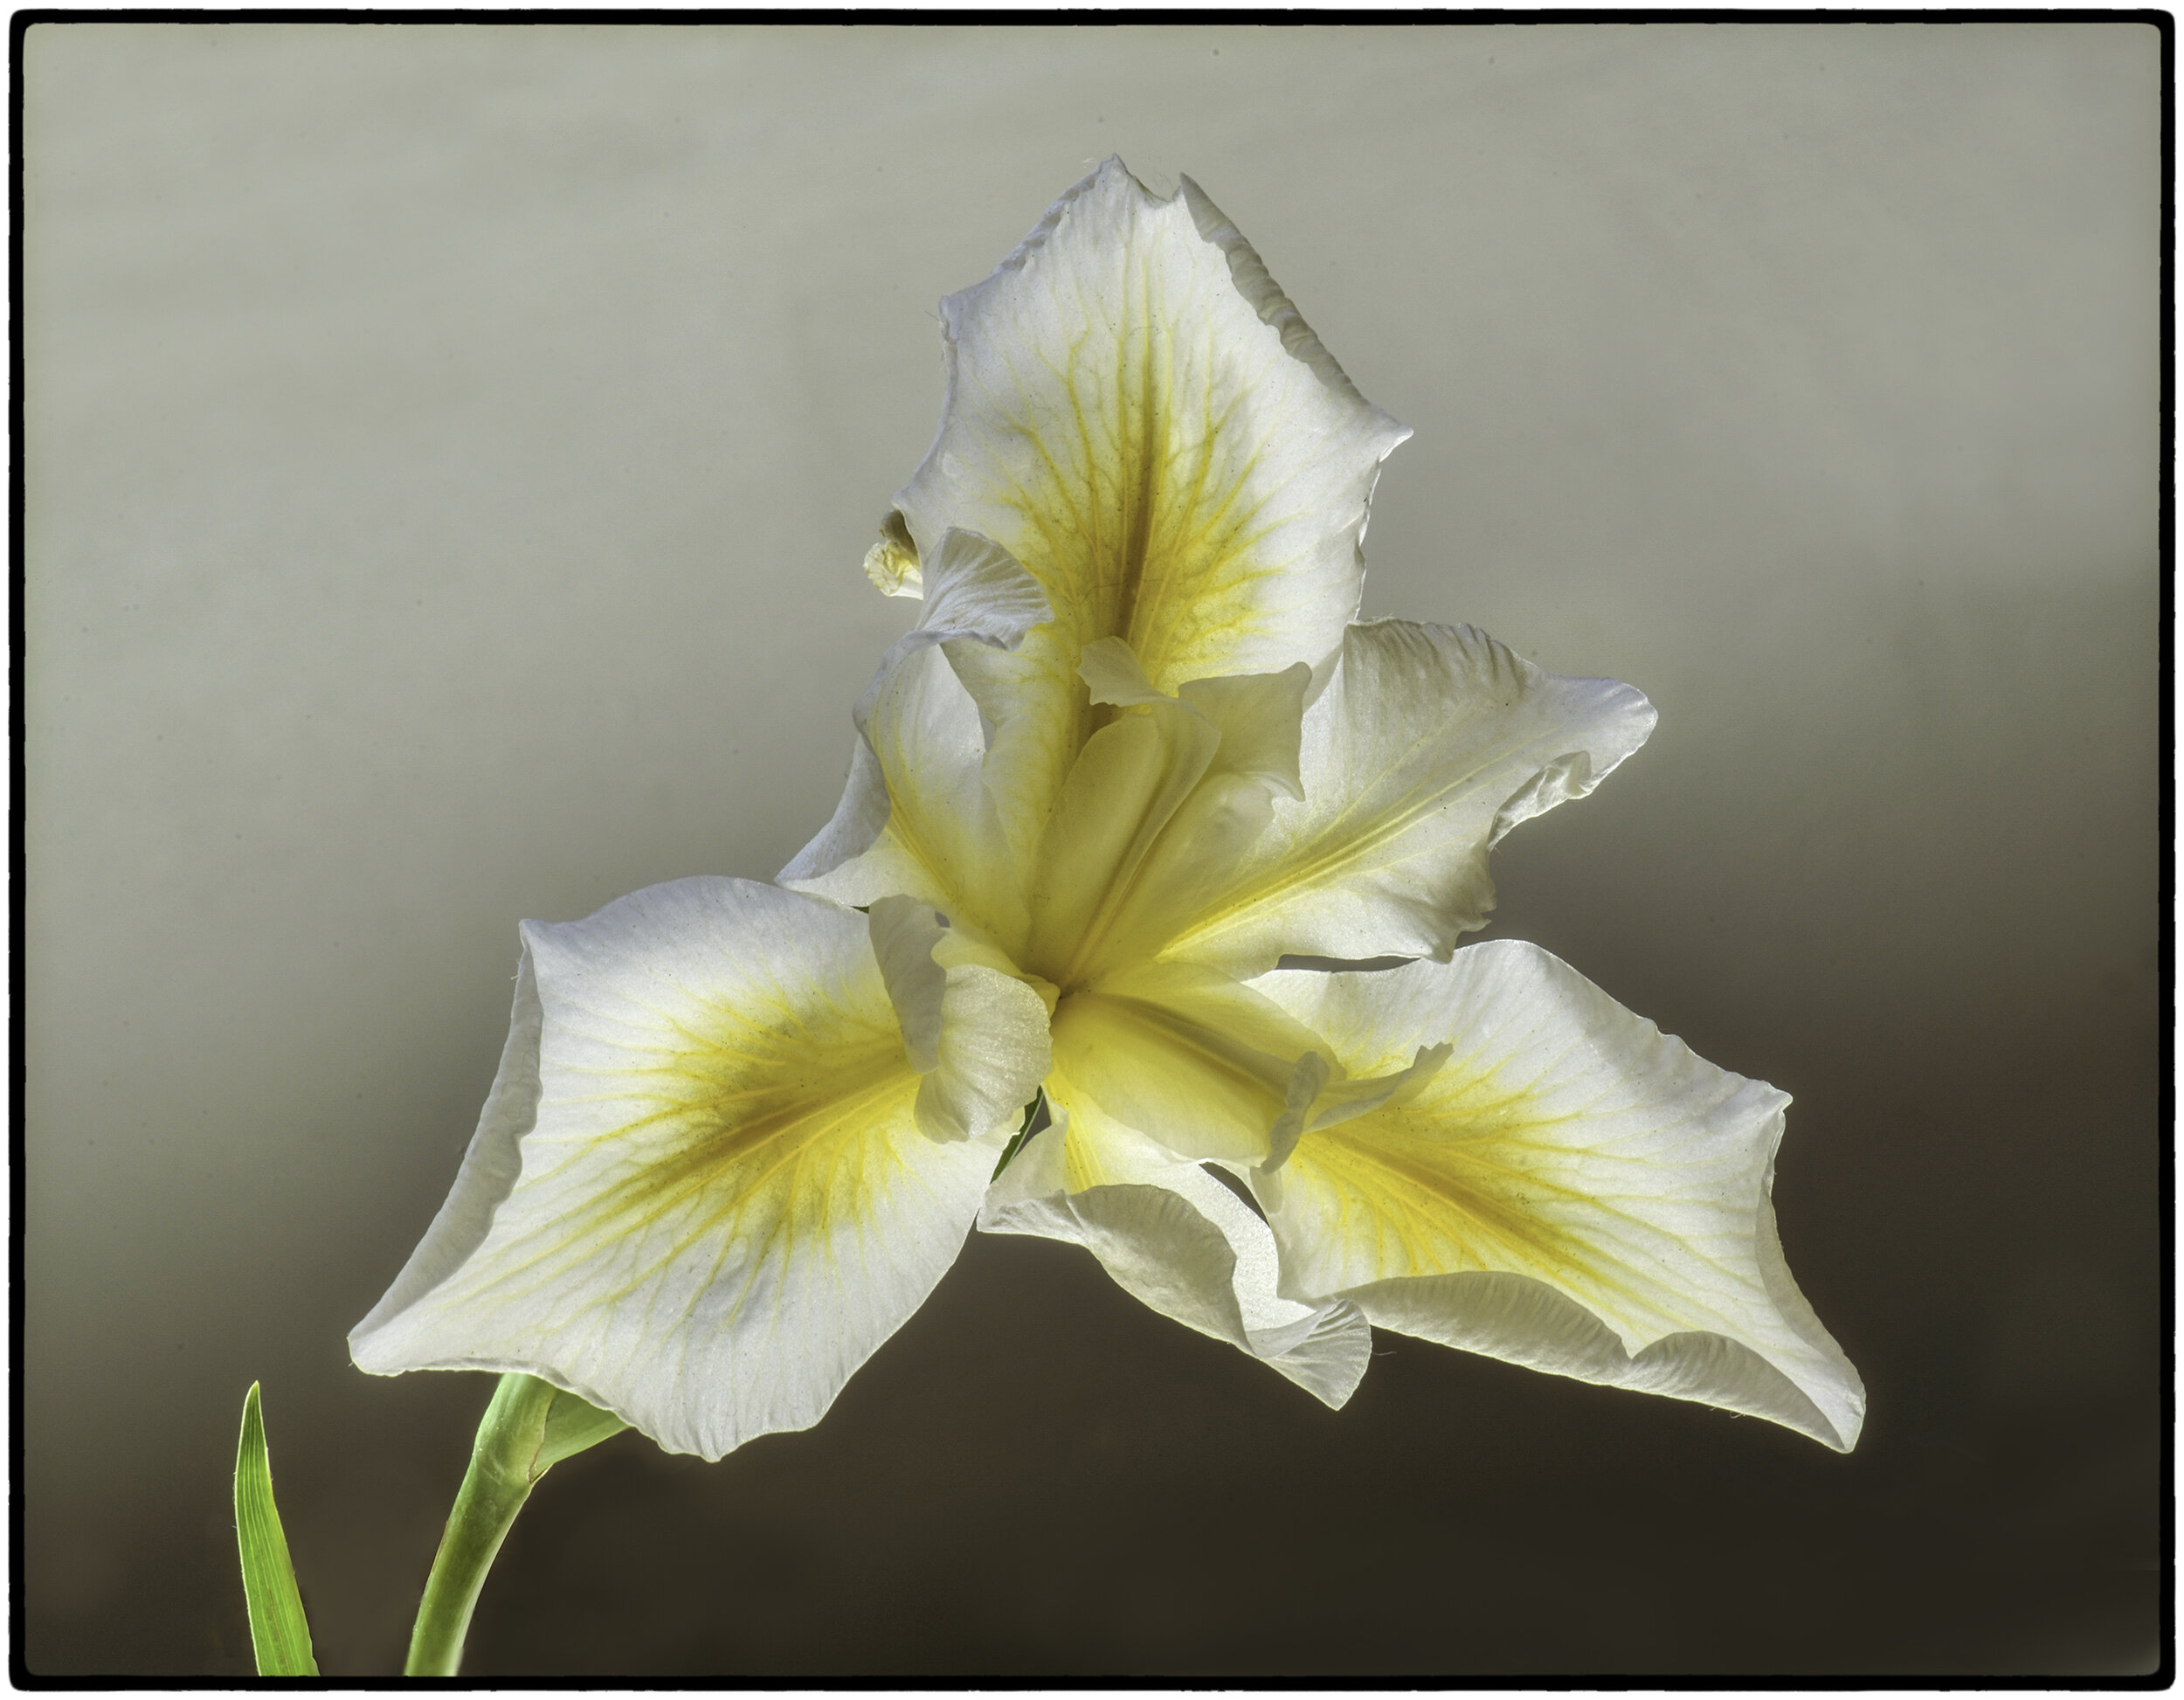 Yellow and White Pacific Coast Iris